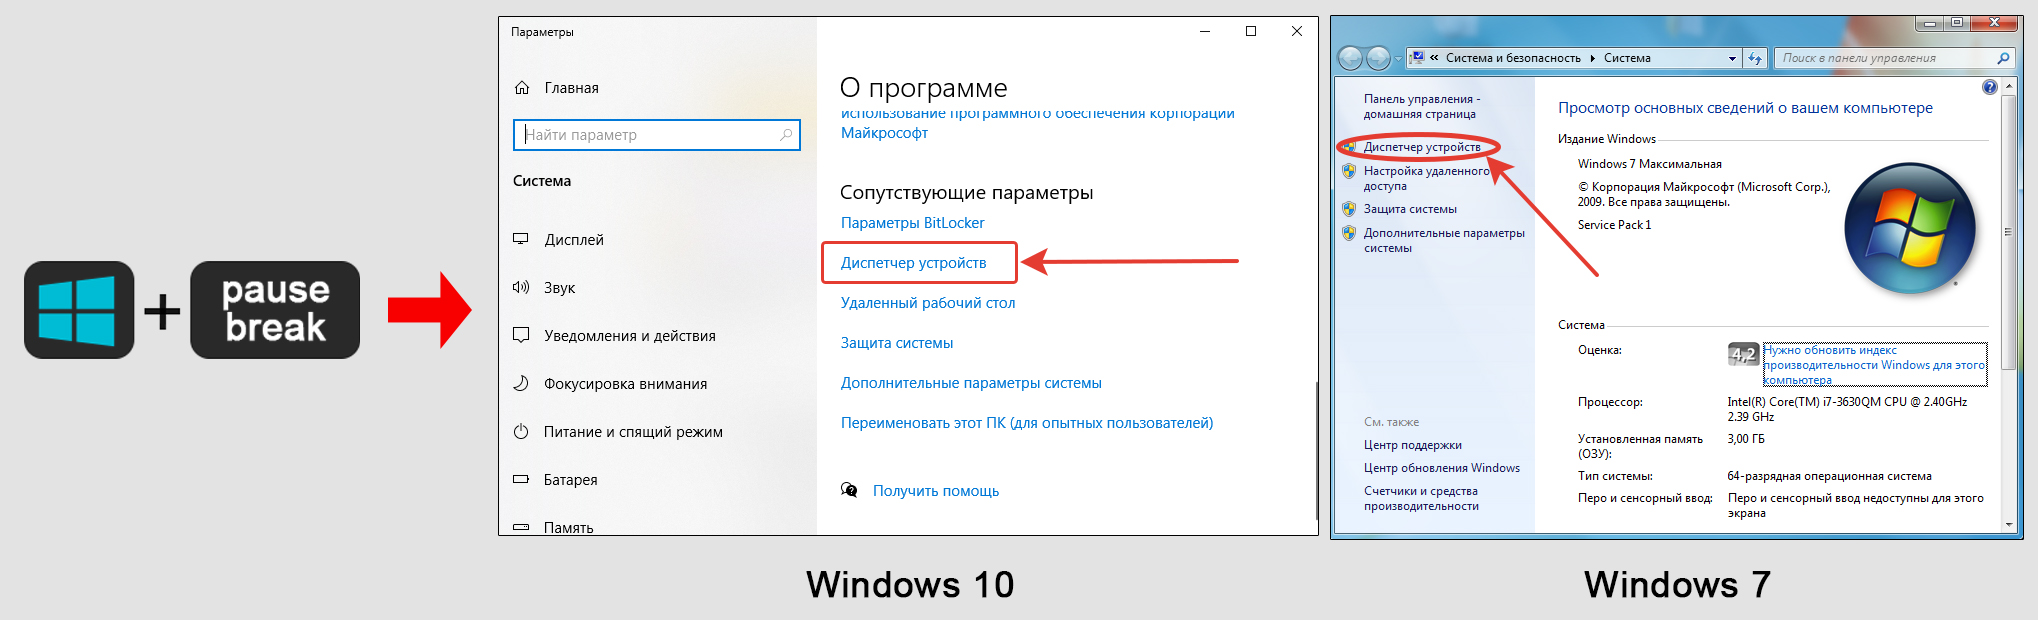 Кнопки Win + Pause Break на клавиатуре, окна свойств системы в Windows 10 и 7. Стрелками показаны ссылки на диспетчер устройств.